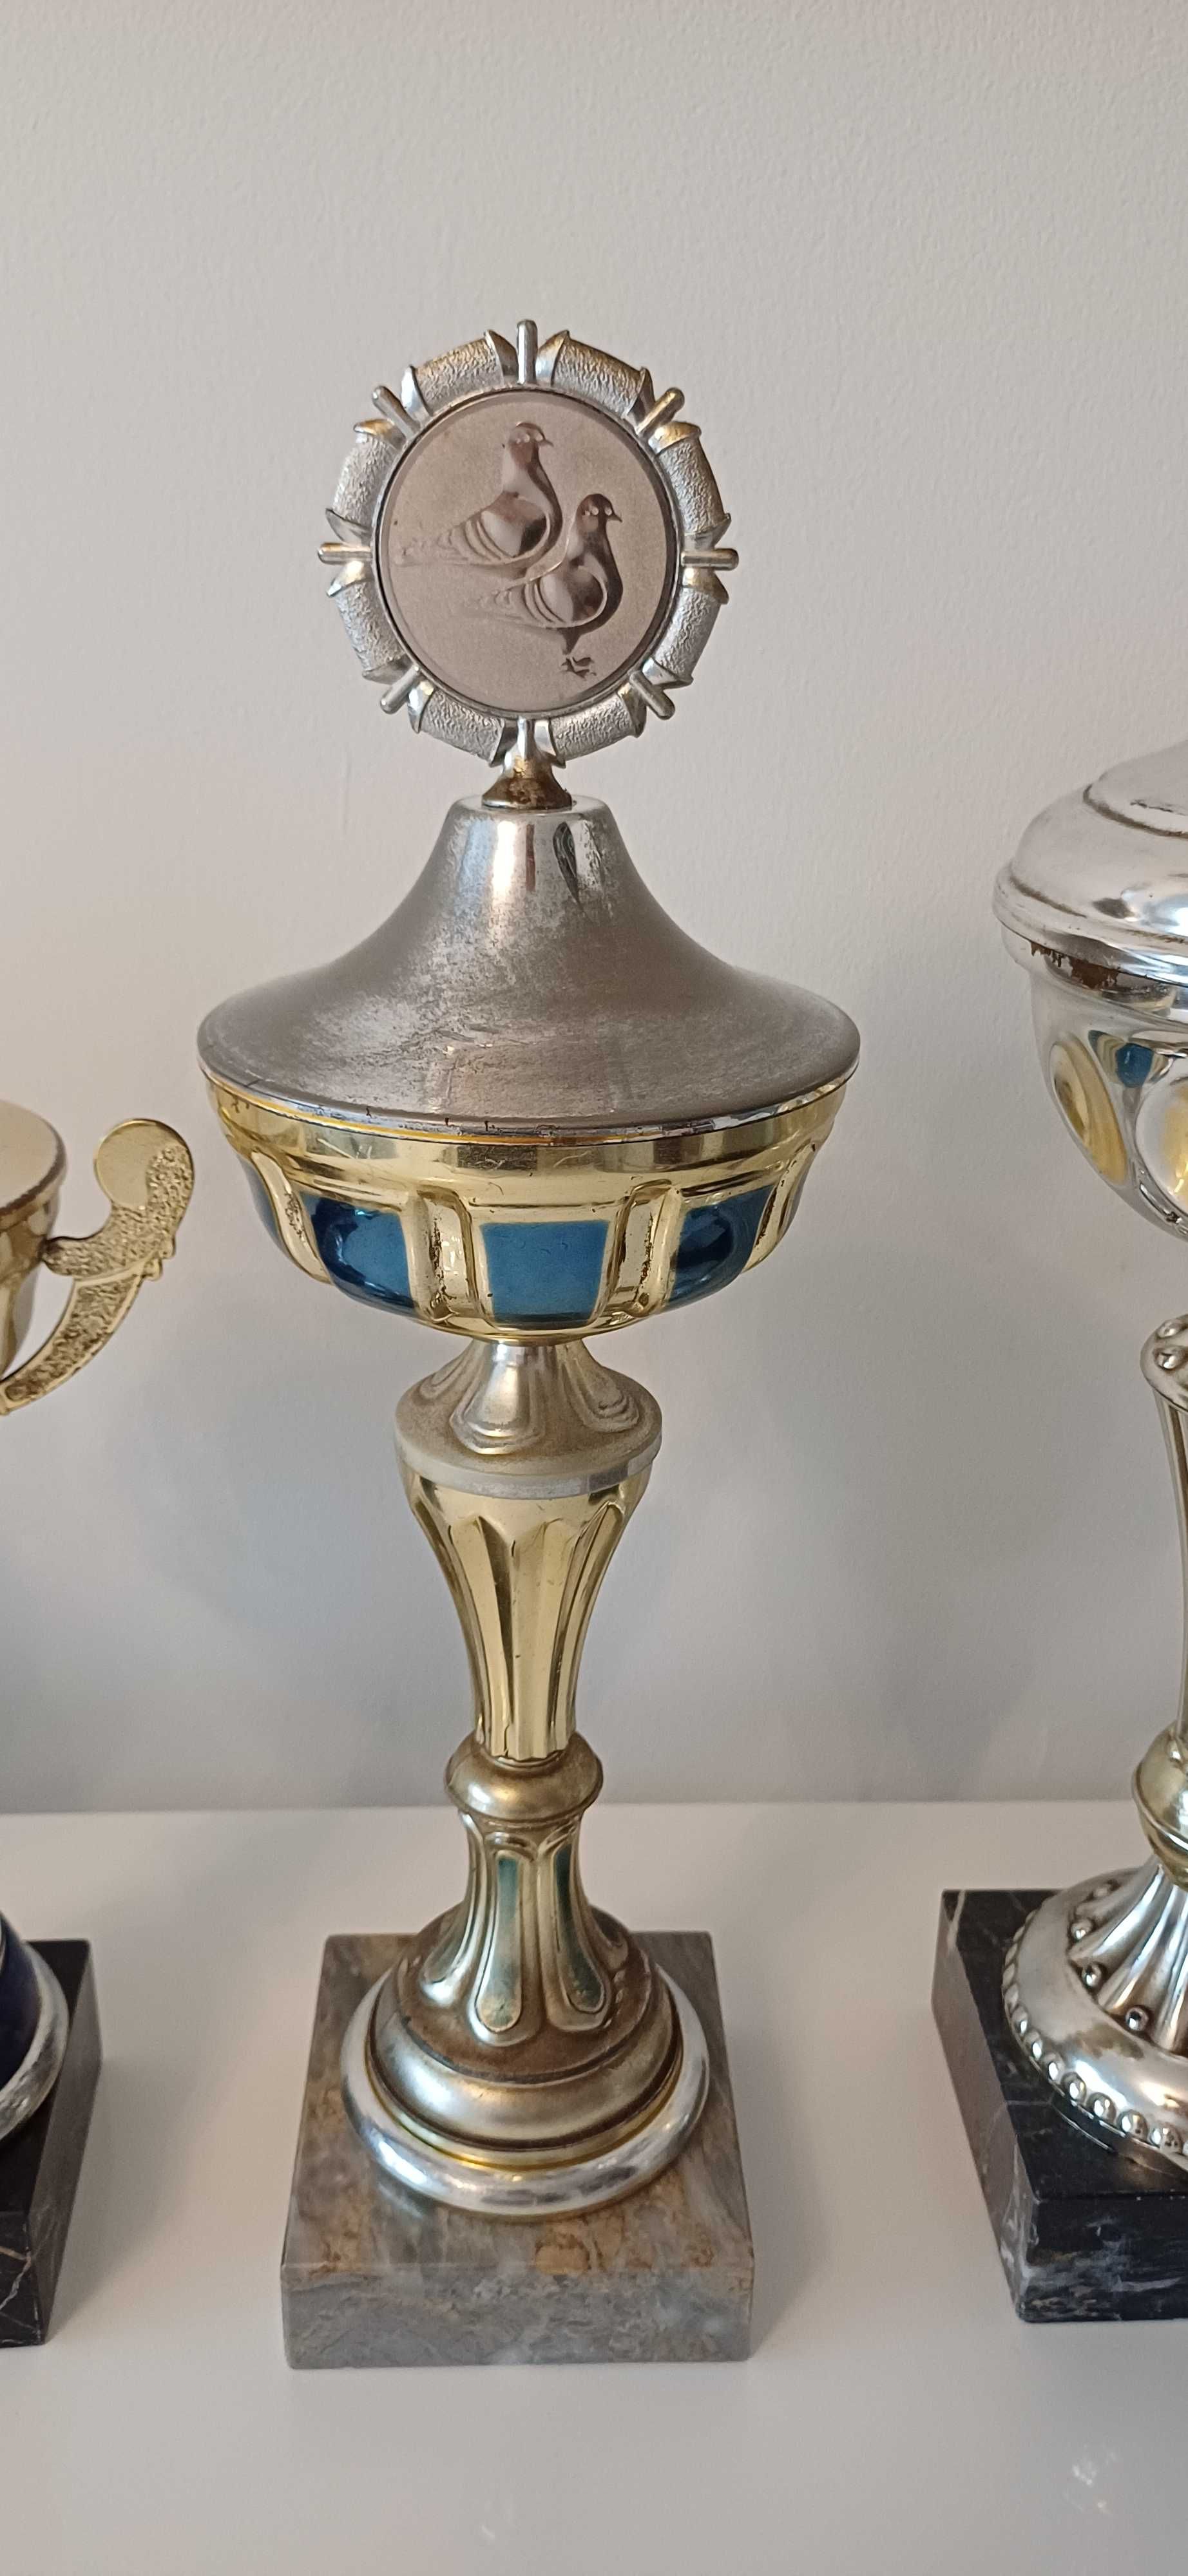 Puchary trofea gołębiarskie